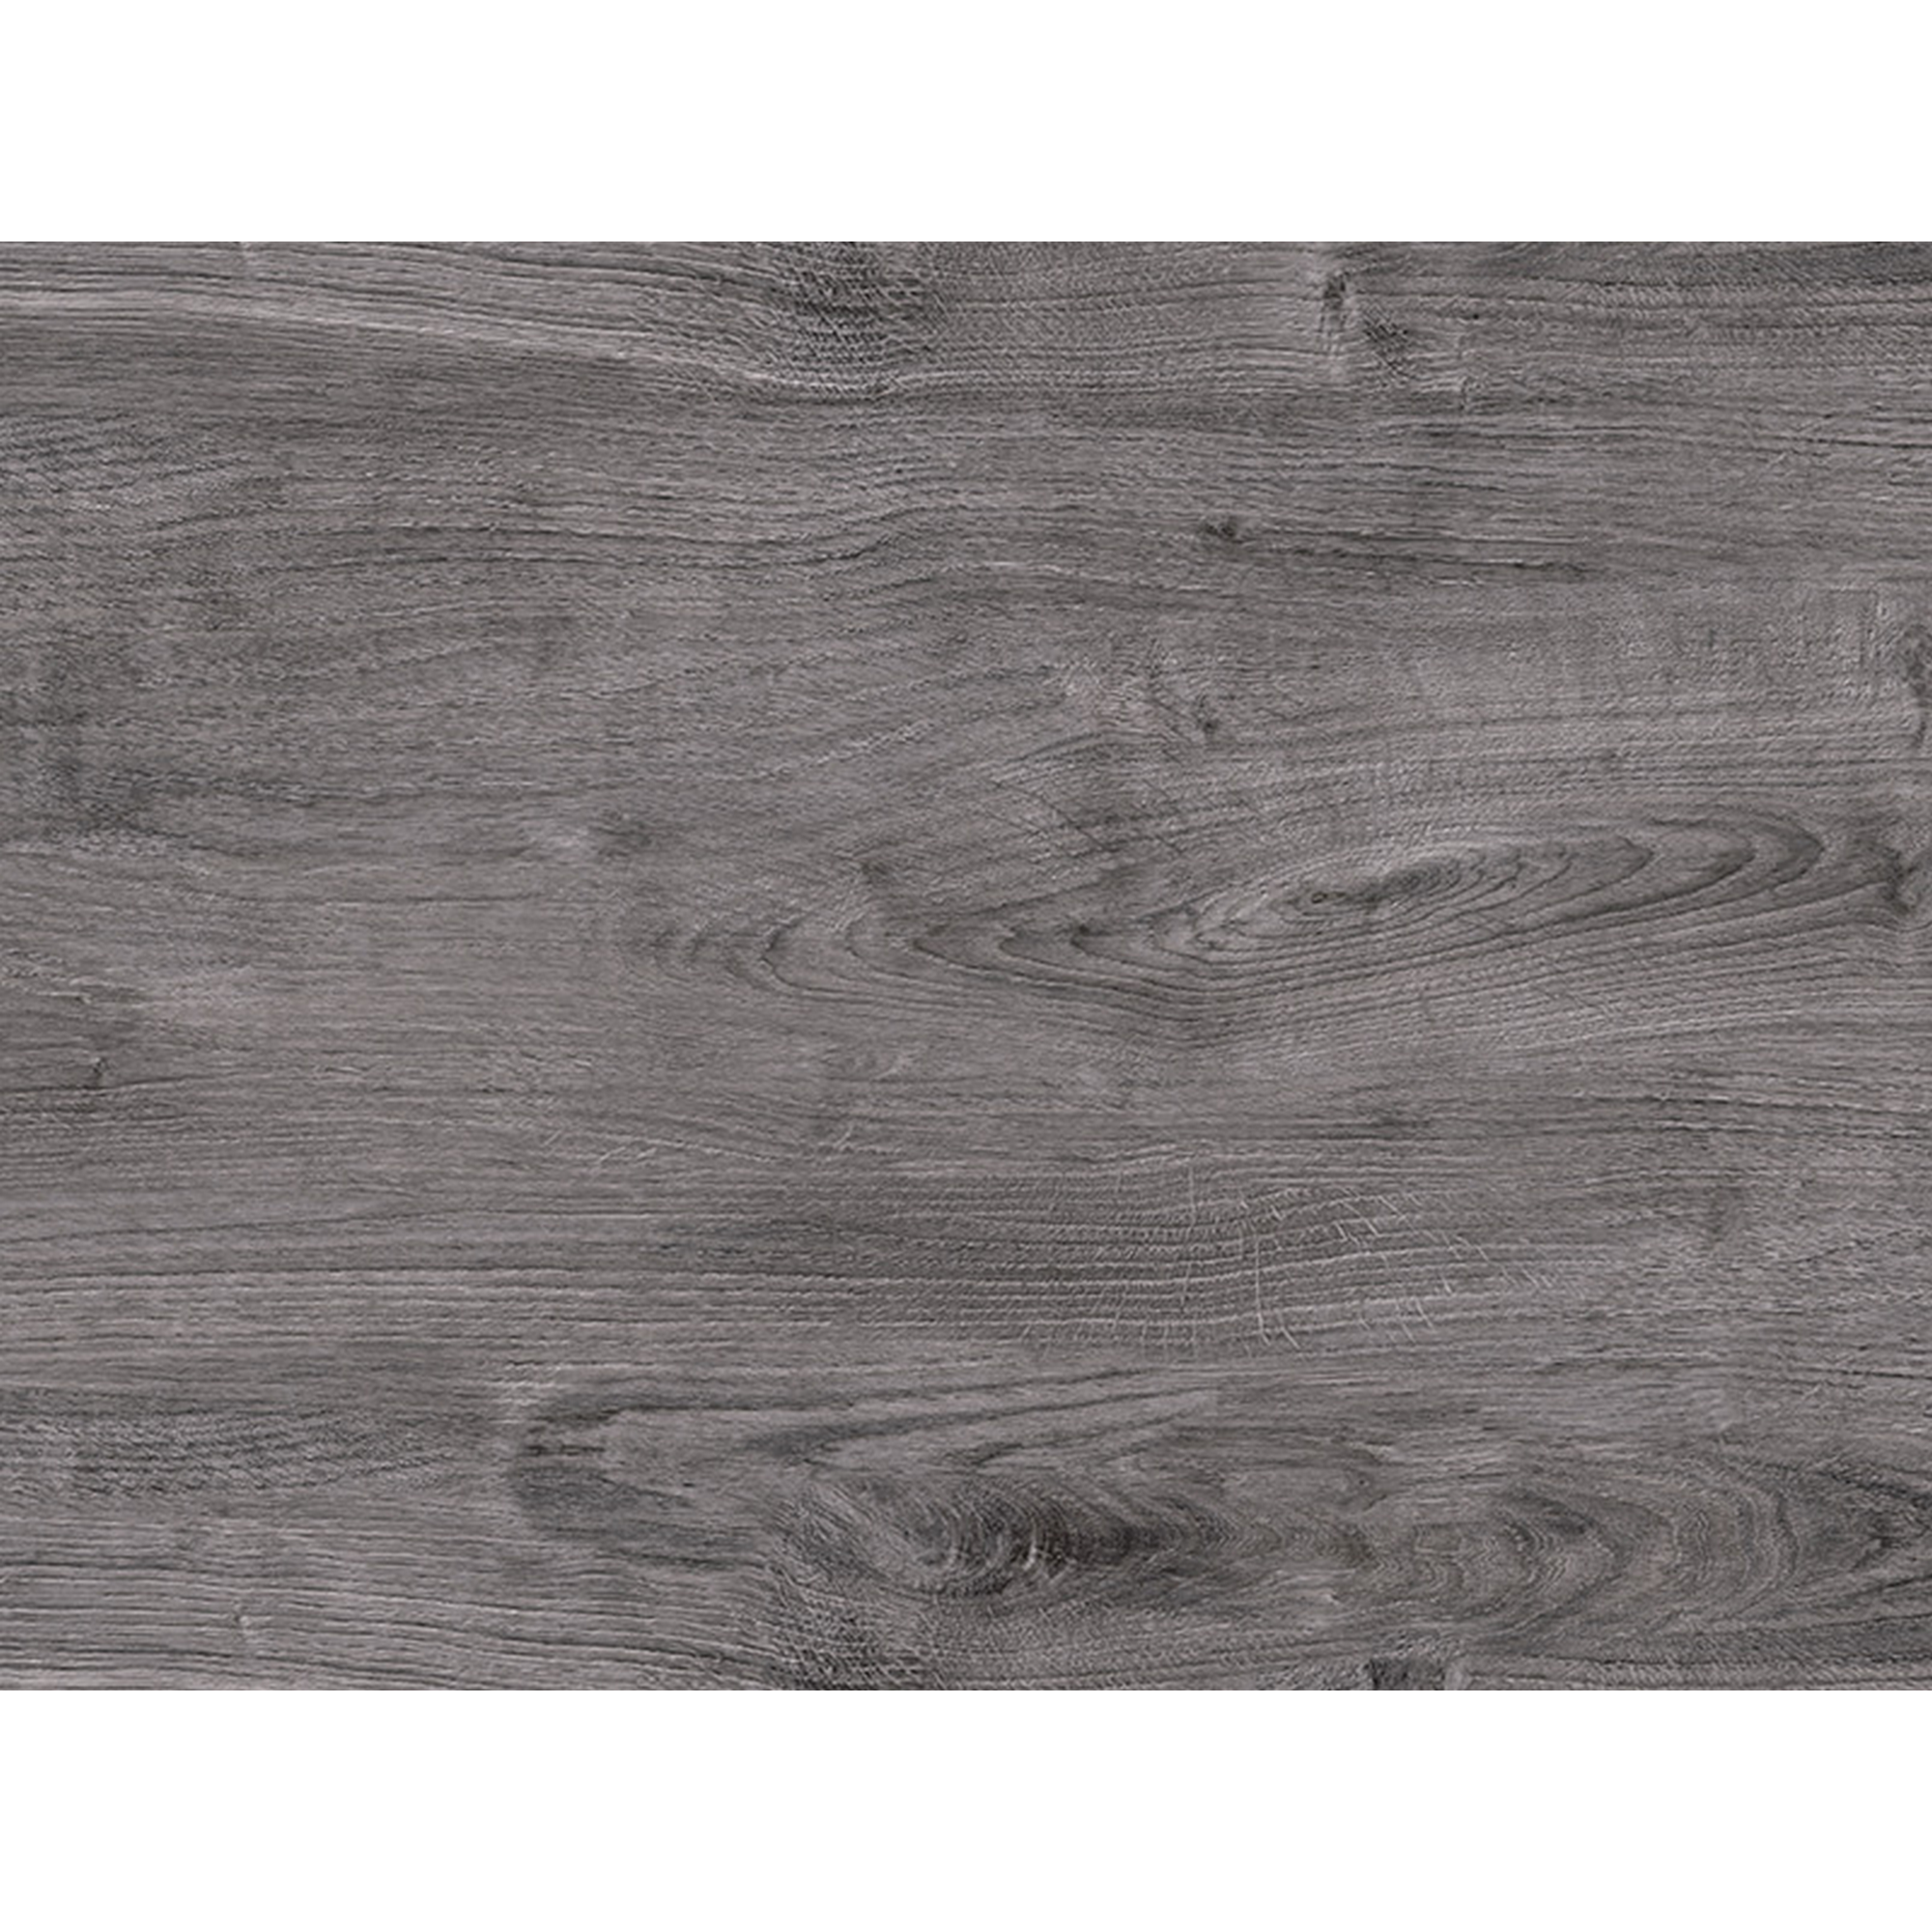 Terrassenplatte 'T-Court Fine Wood' graphit 60 x 30 x 4 cm + product picture